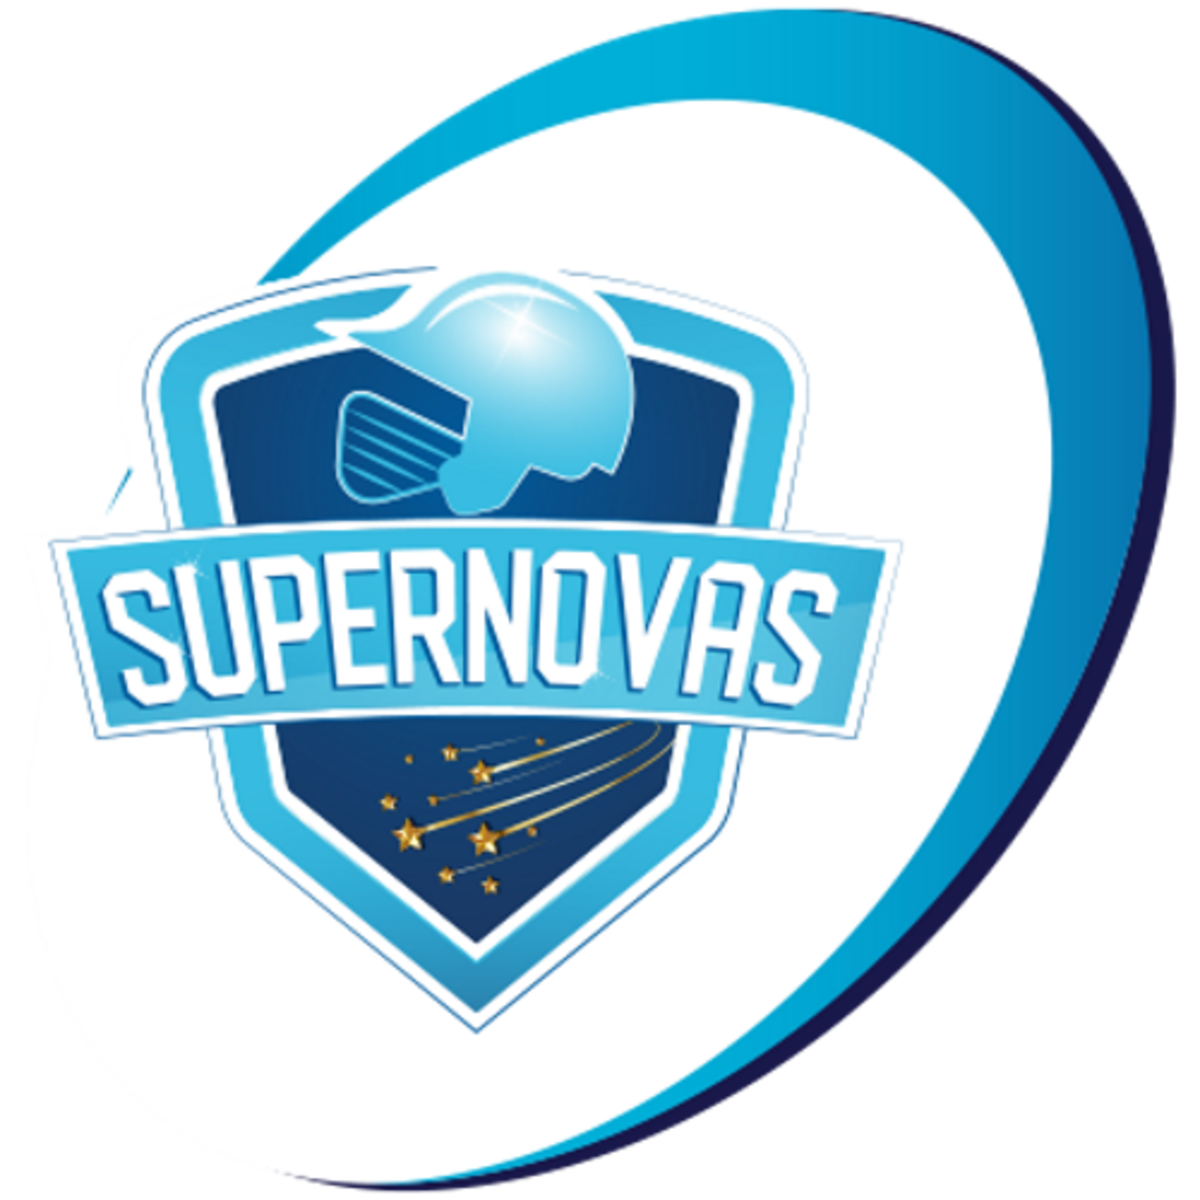 Kings Xi Punjab Ipl Team - Ipl 2018 Teams Logo Transparent PNG - 448x480 -  Free Download on NicePNG